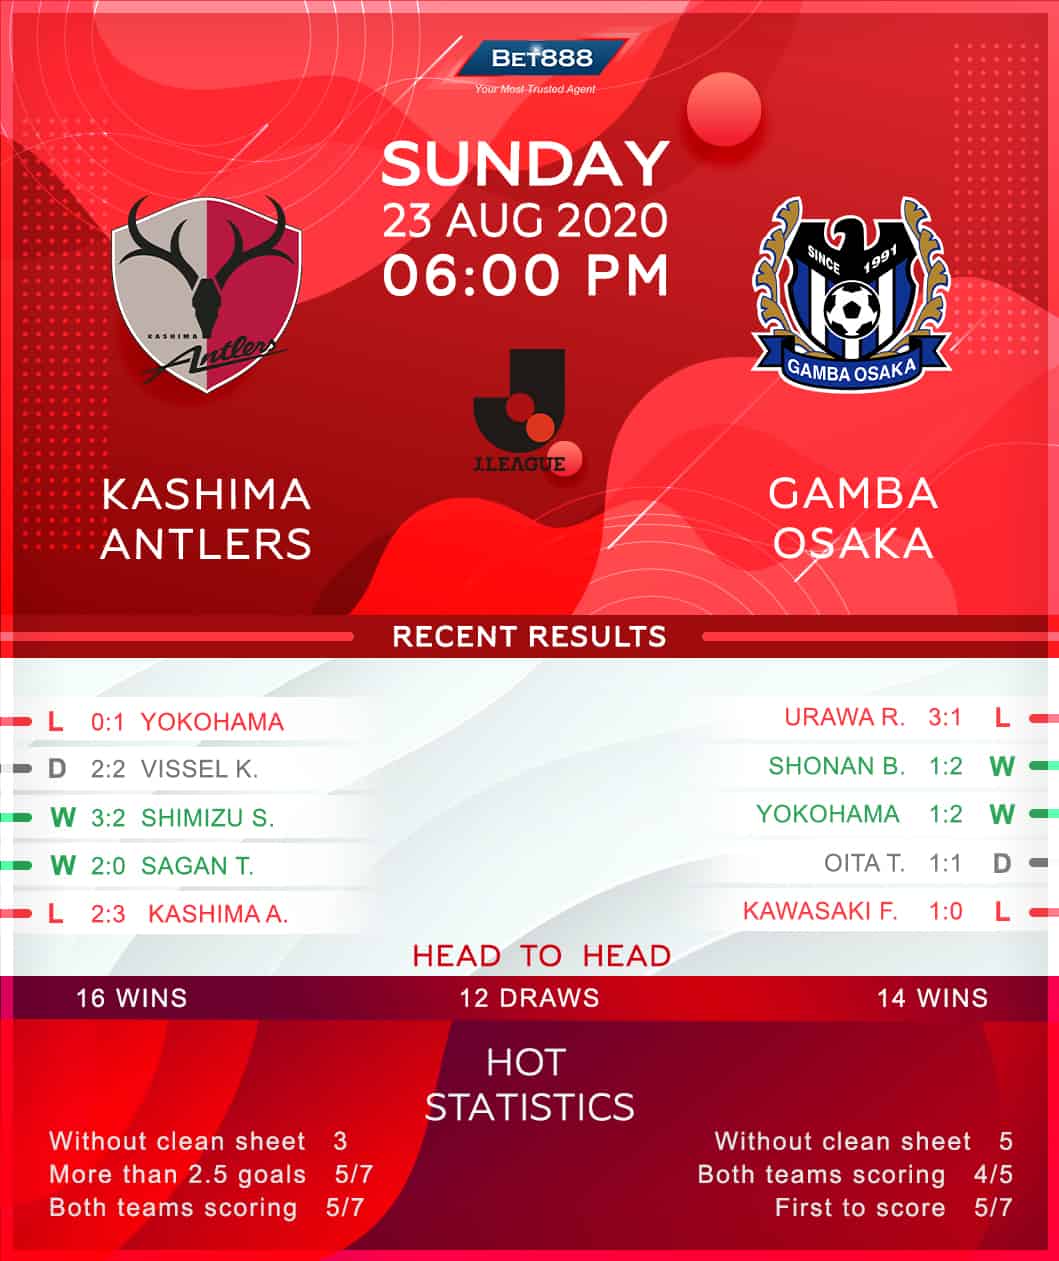 Kashima Antlers vs Gamba Osaka 23/08/20